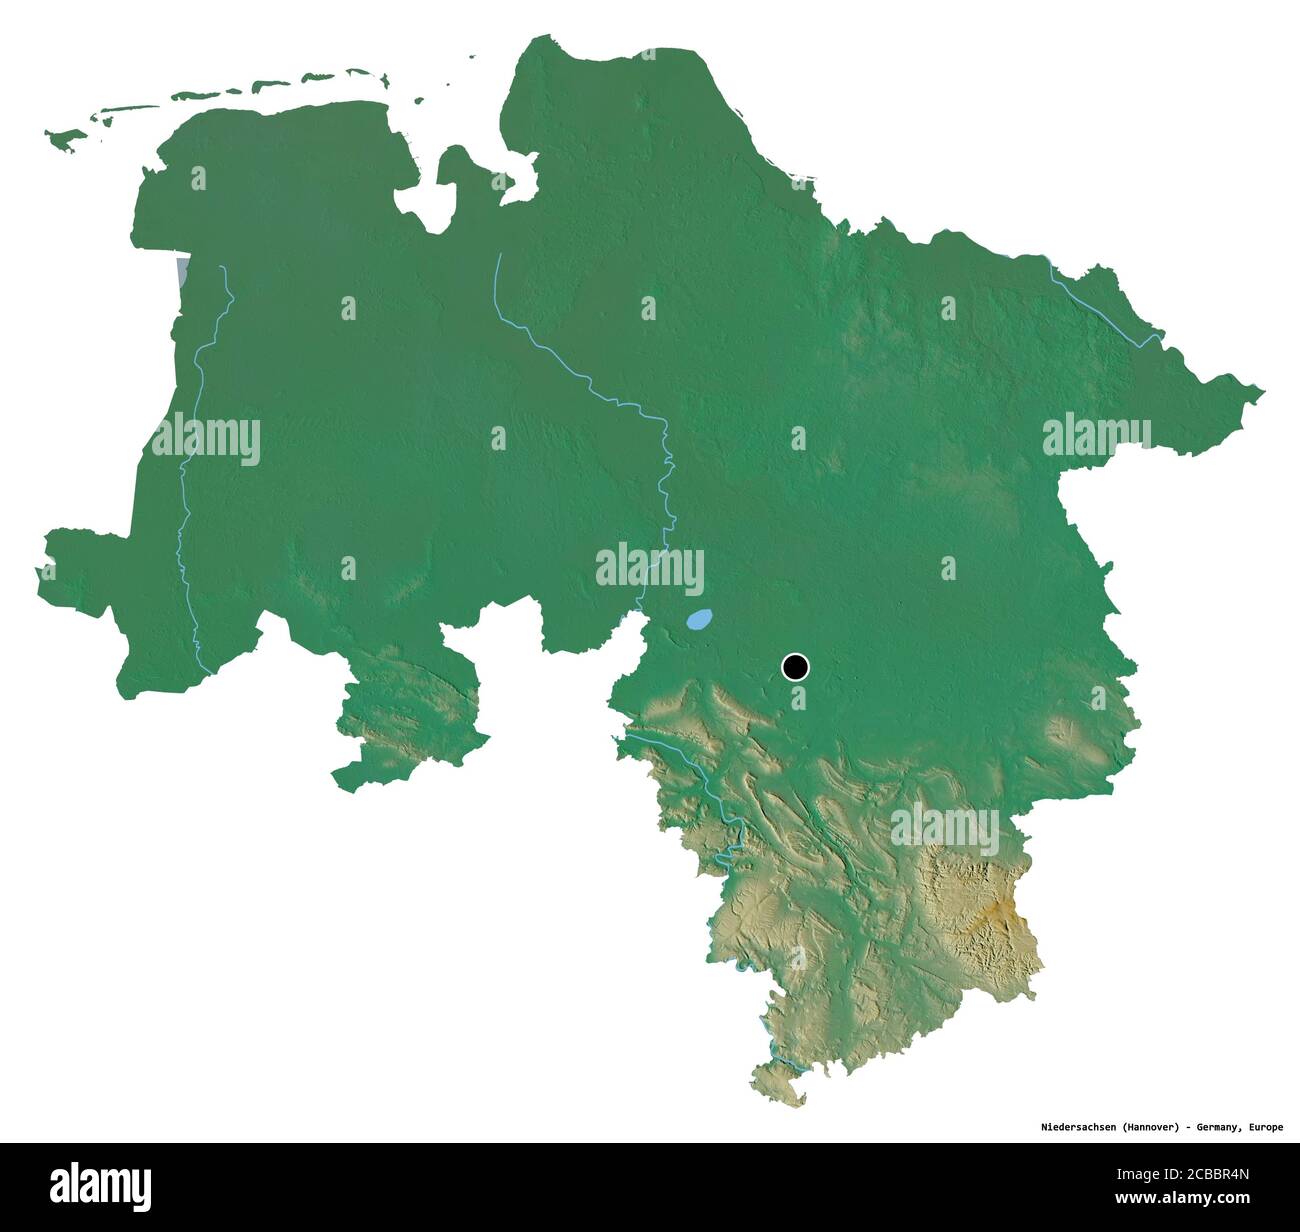 Forme de Niedersachsen, Etat d'Allemagne, avec sa capitale isolée sur fond blanc. Carte topographique de relief. Rendu 3D Banque D'Images